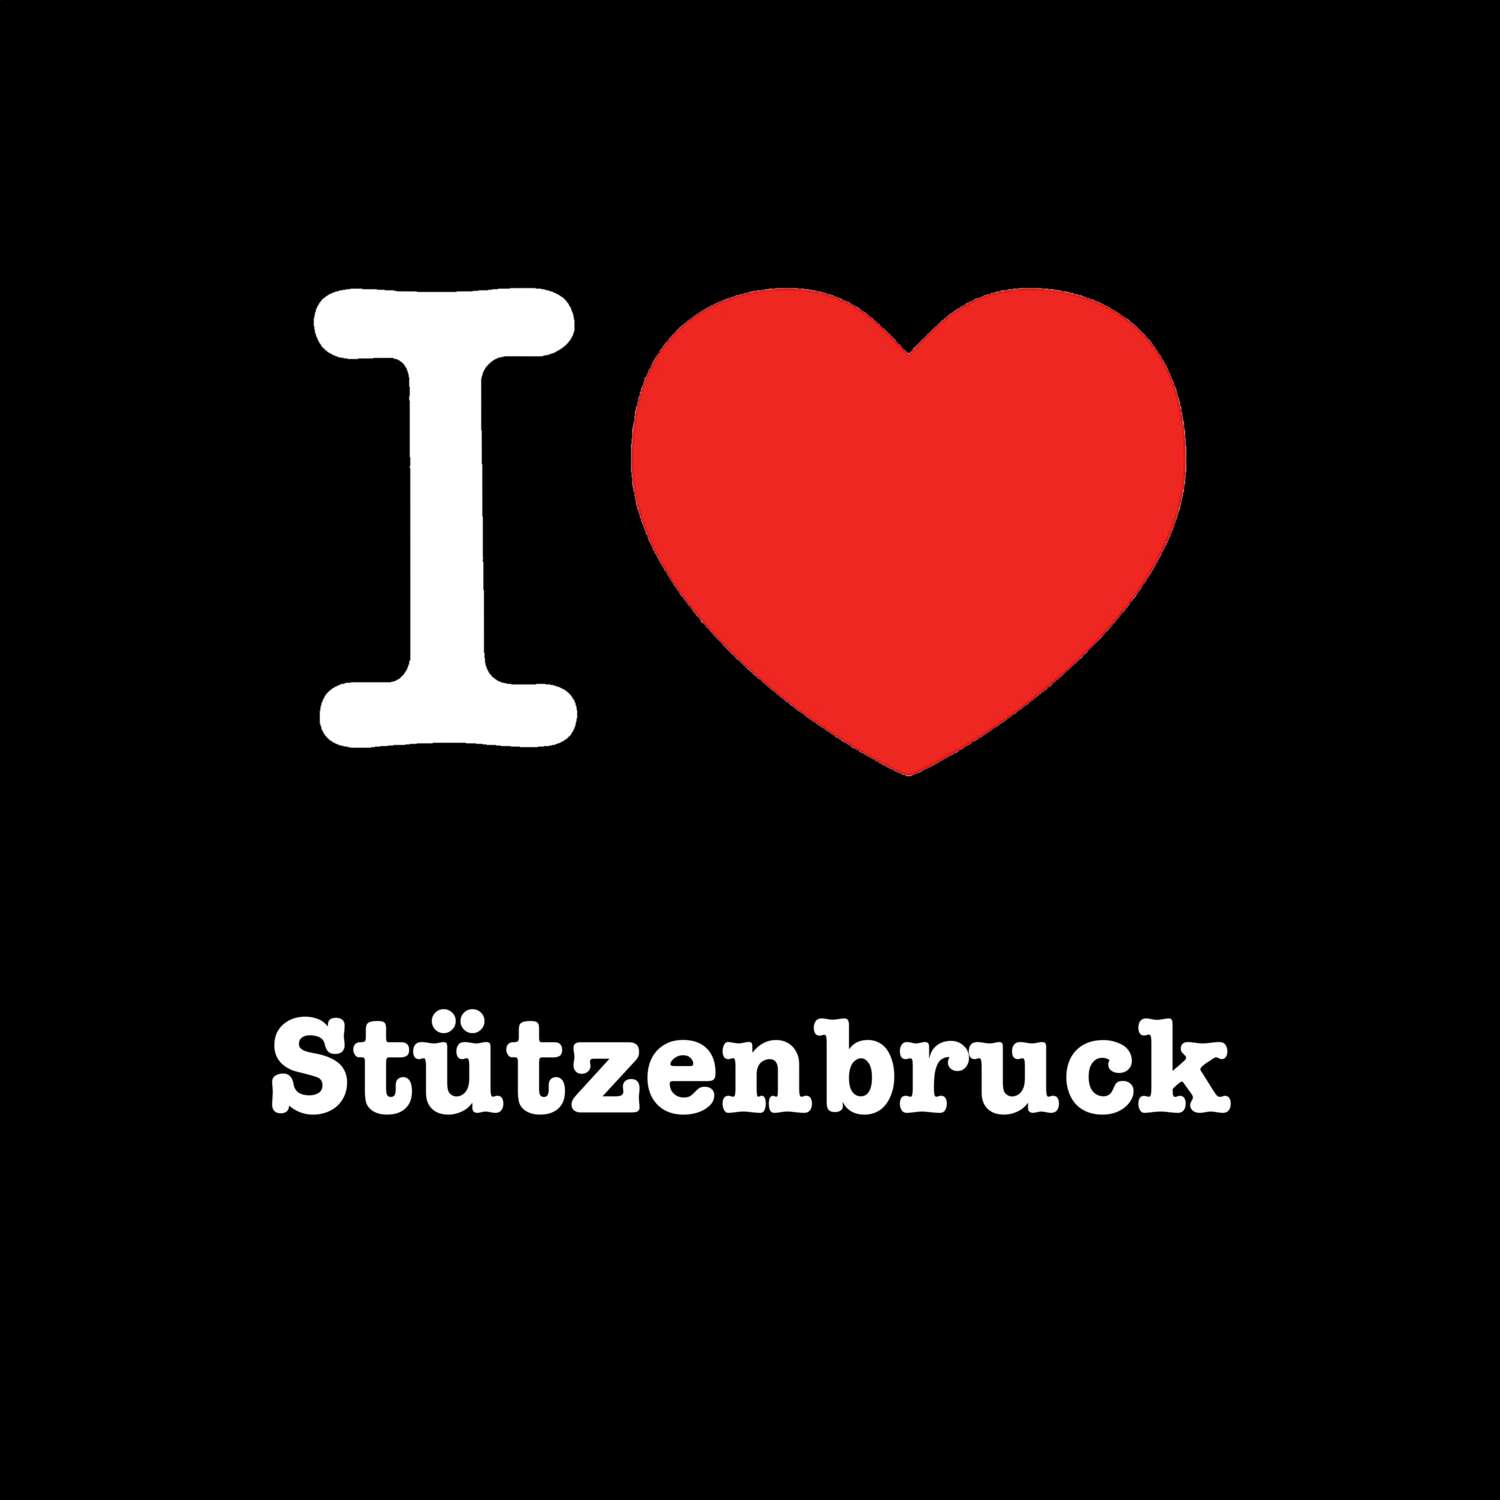 Stützenbruck T-Shirt »I love«